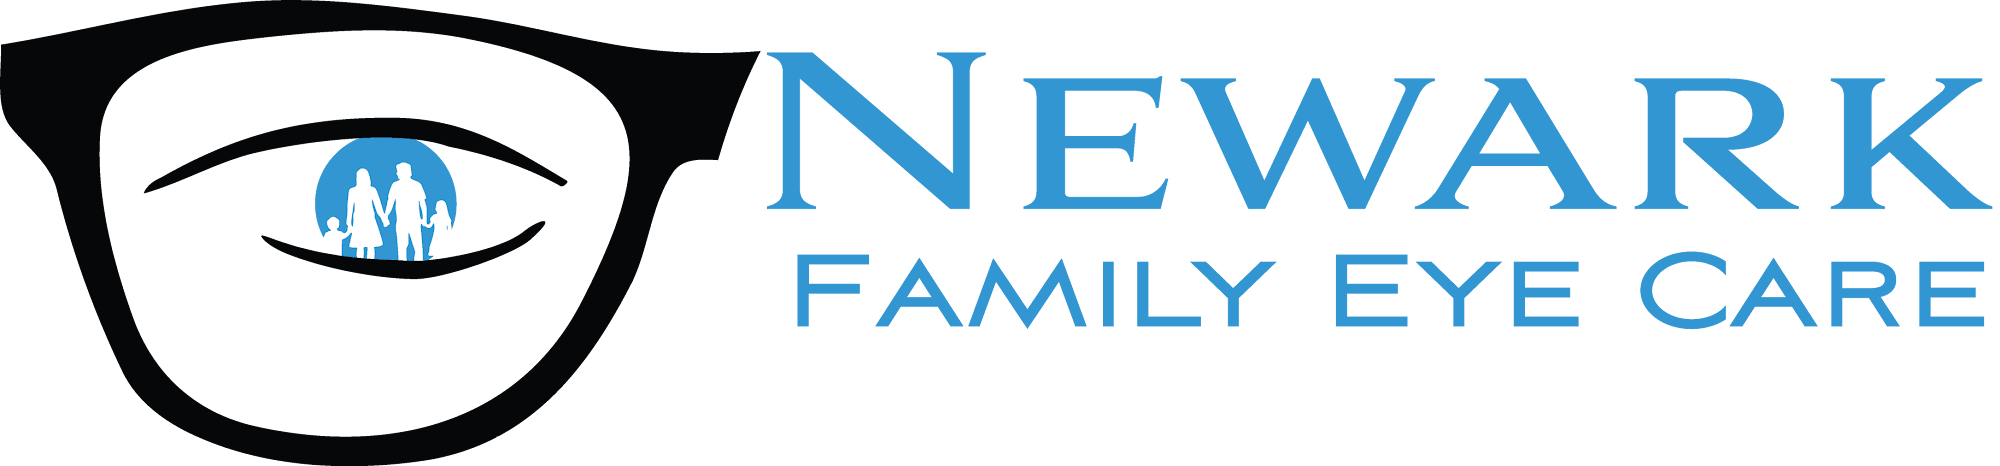 Newark Family Eye Care